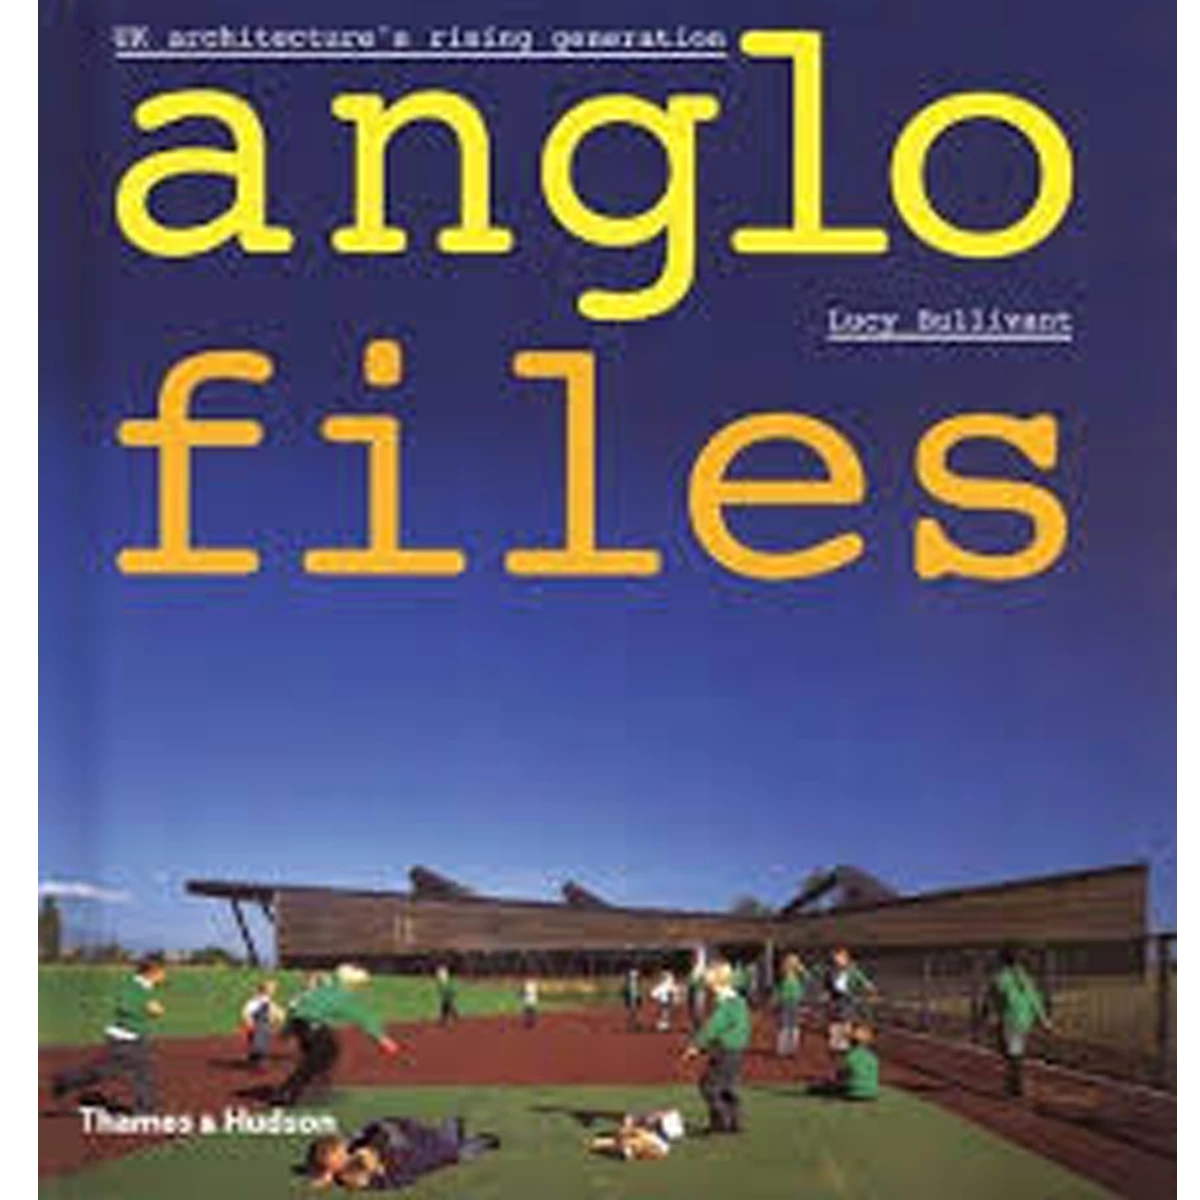 Anglo Files